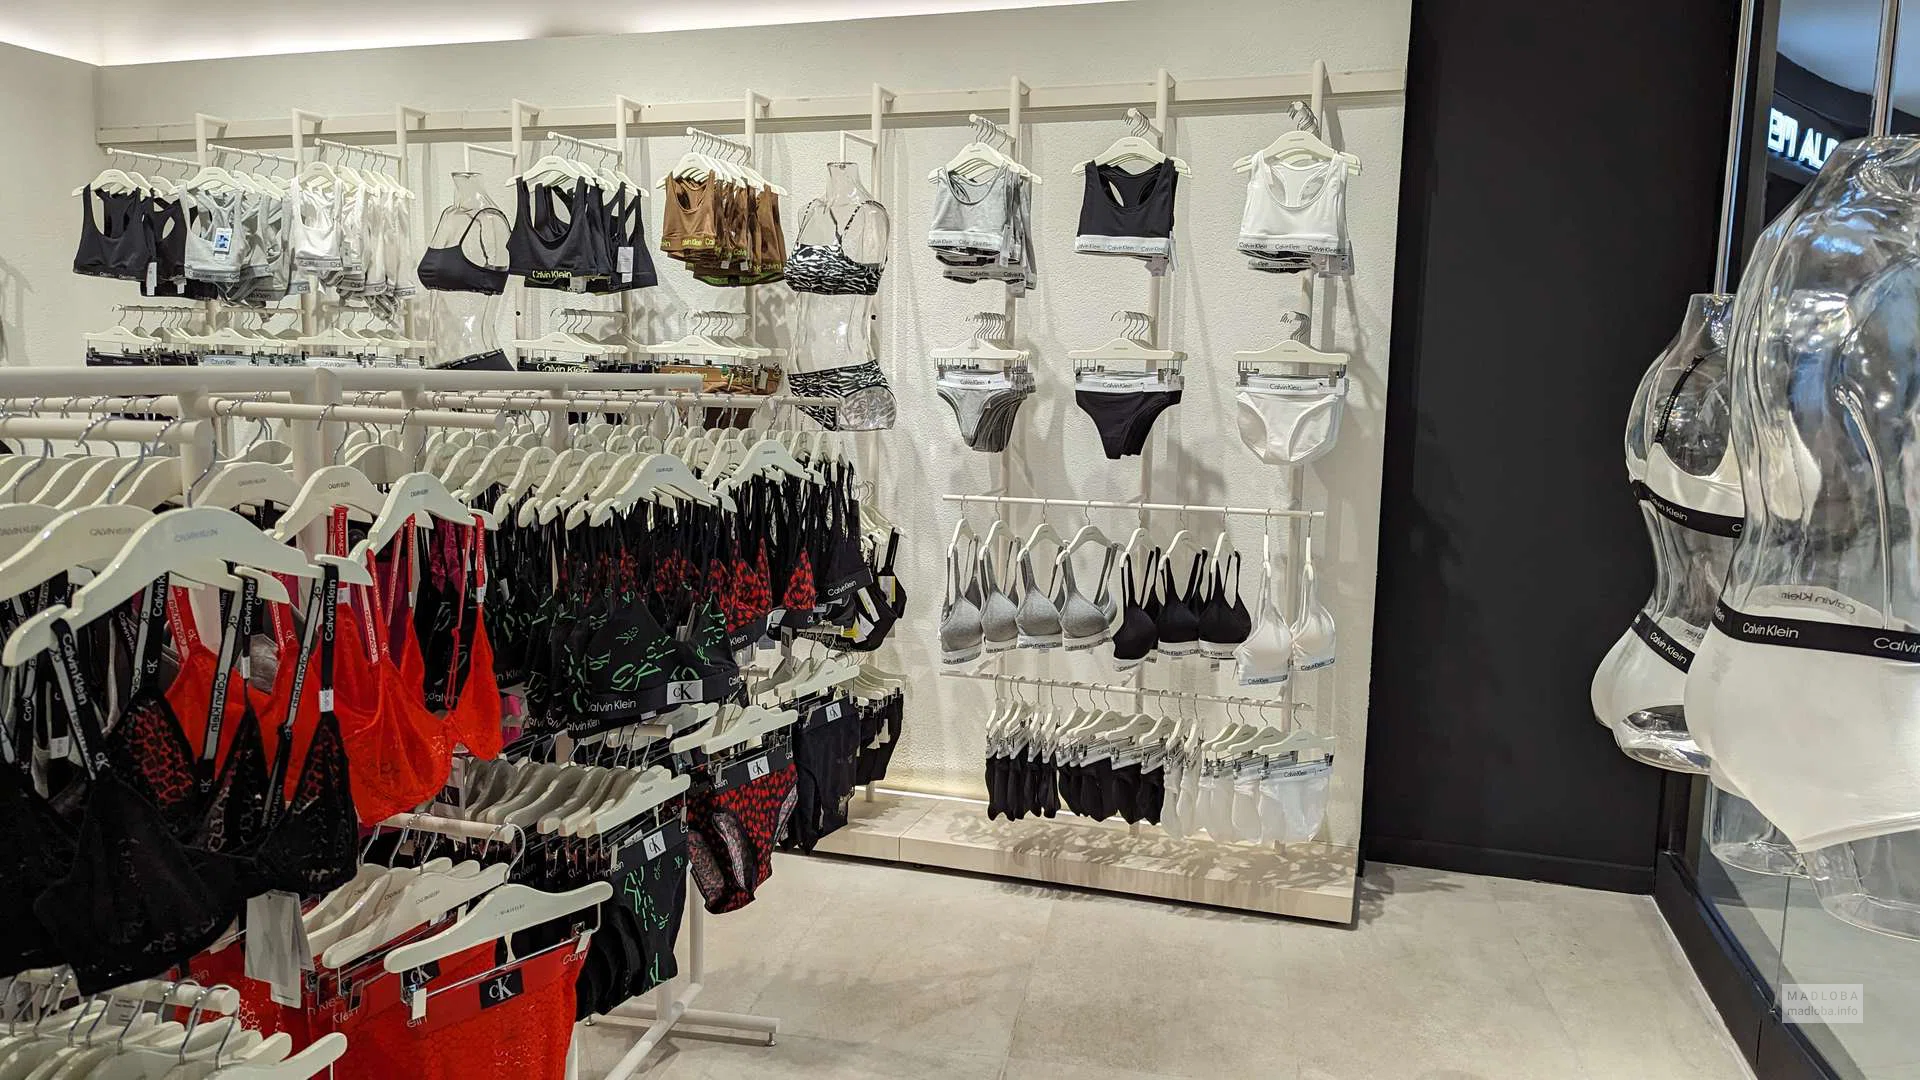 Underwear store Calvin Klein Underwear in the shopping center Grand  Mall in Batumi